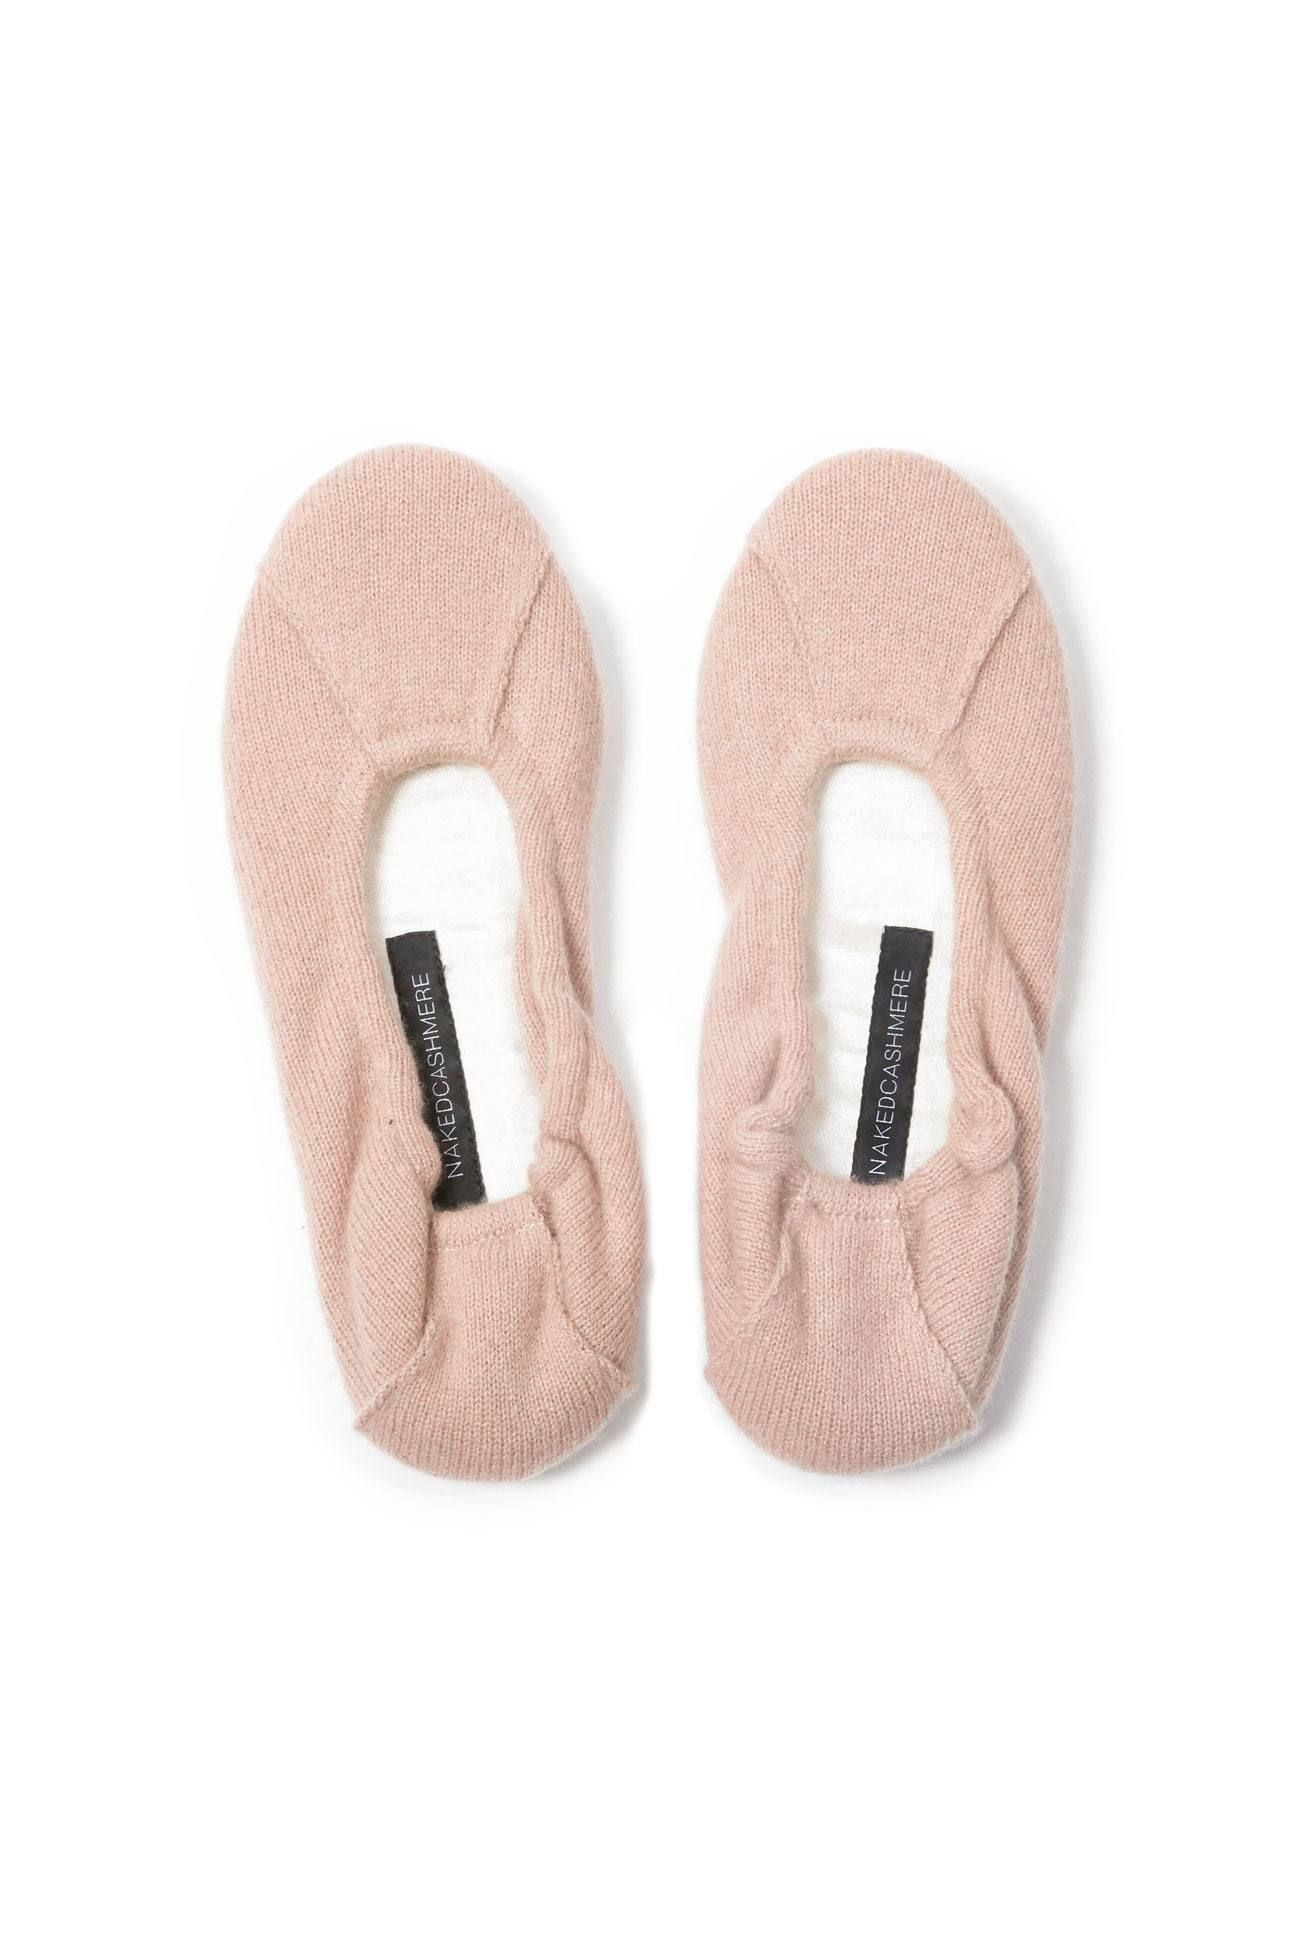 best travel slippers